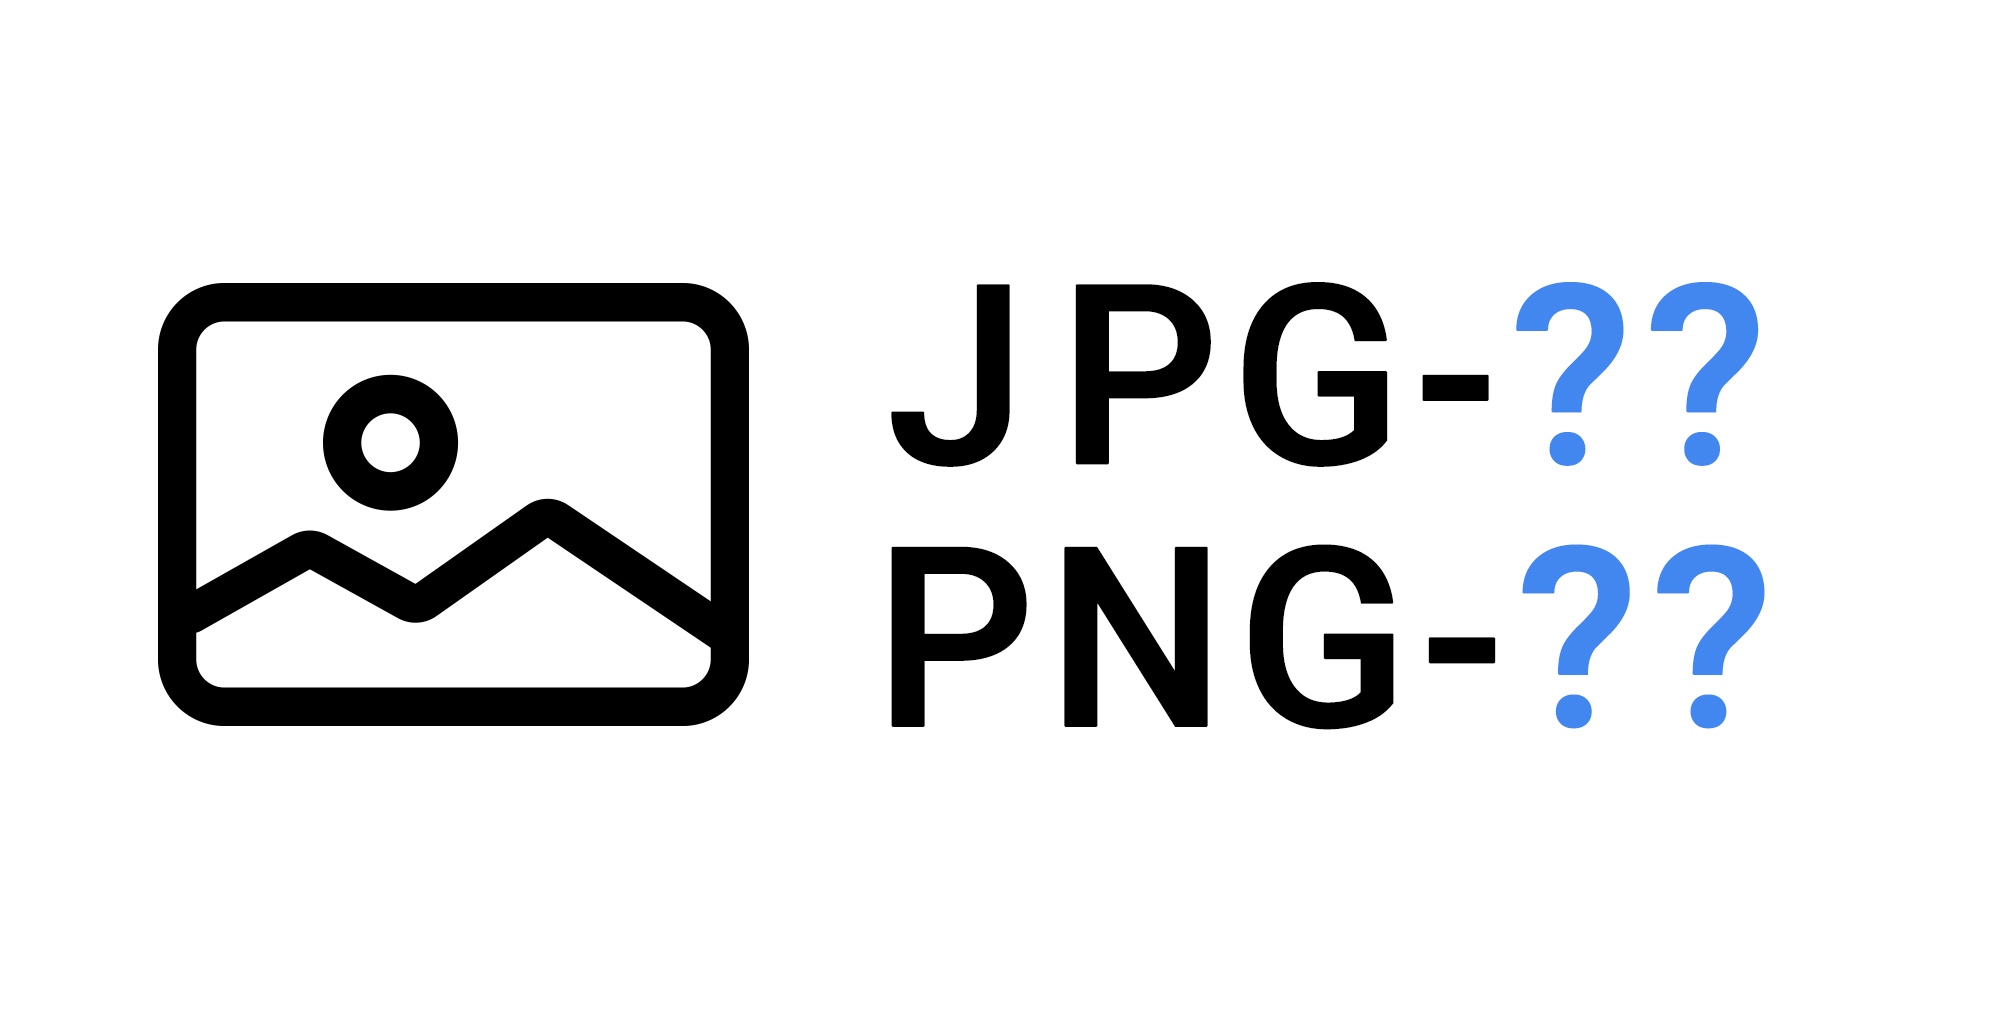 「JPG-??」とか「PNG-??」の??ってなんだろう